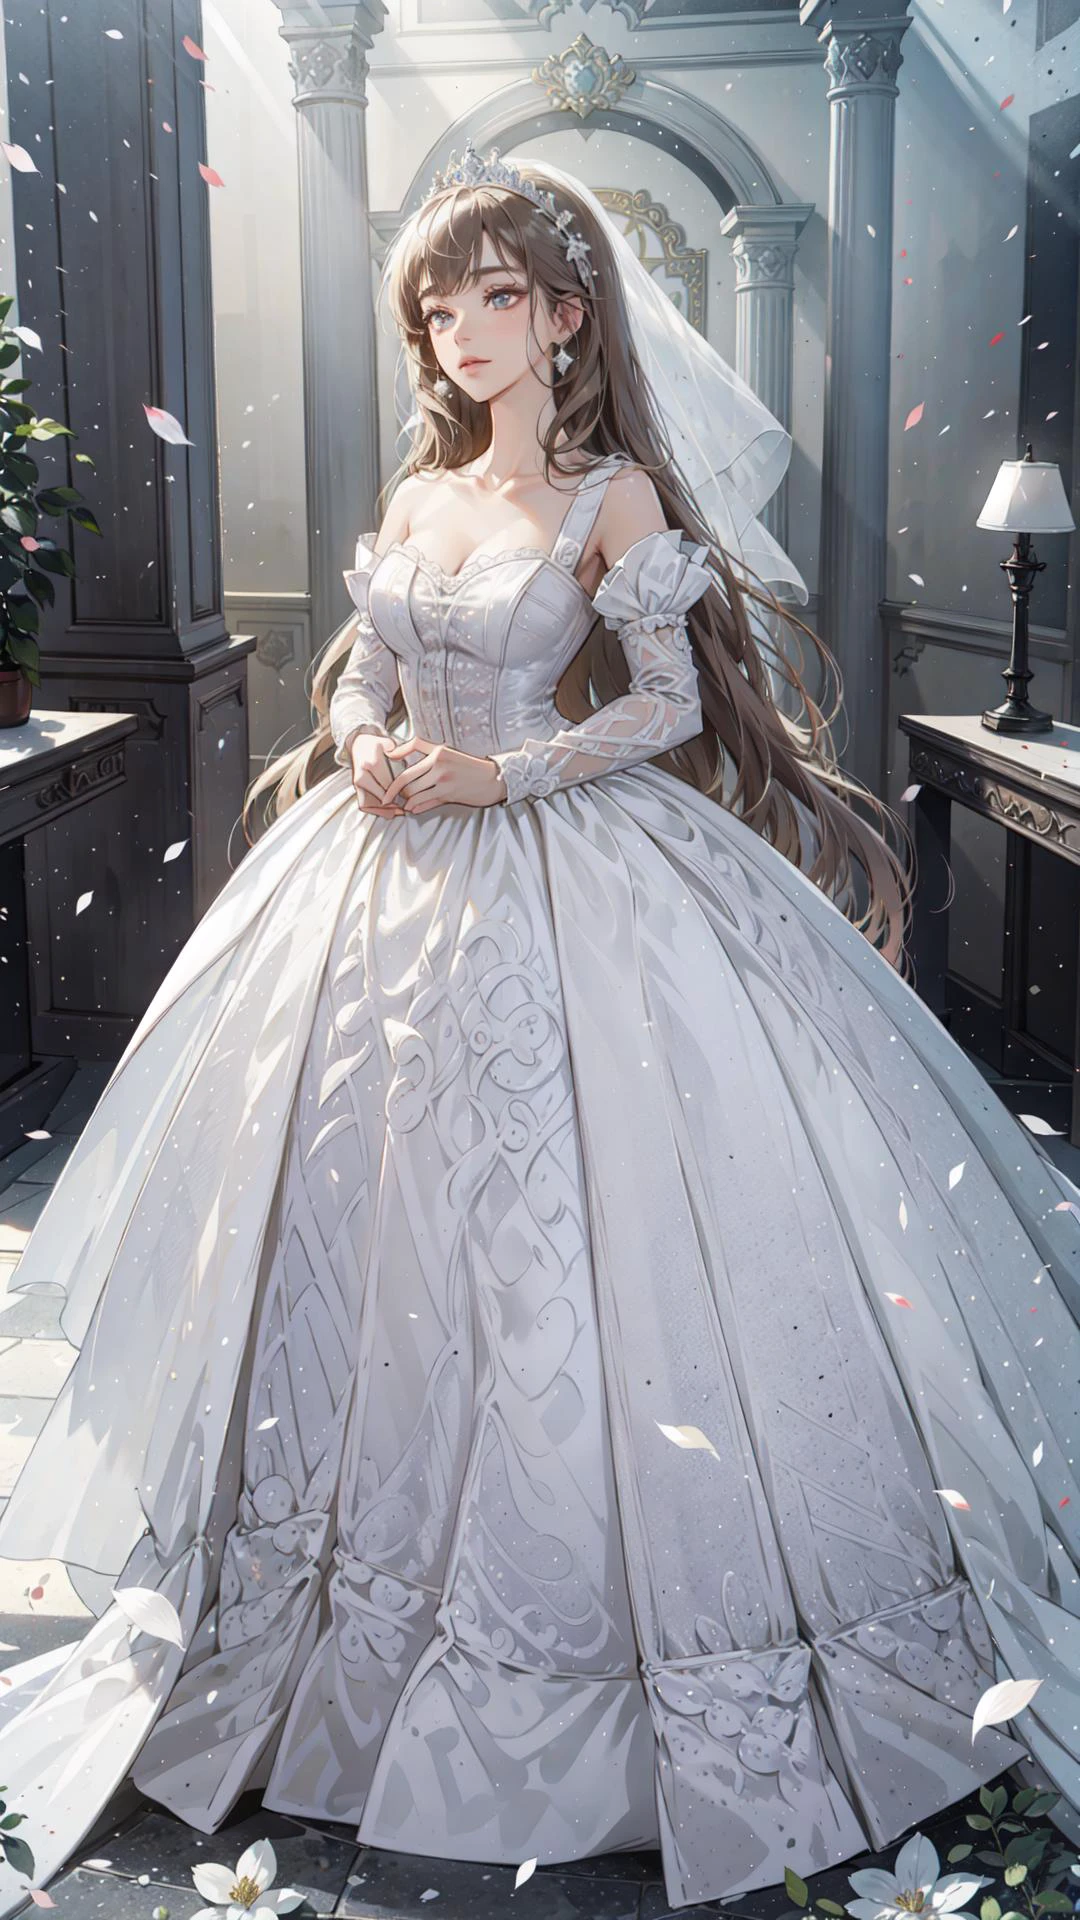 ((最好的质量)), ((杰作))  婚礼公主裙, 光线, 镜头光晕, 白色花瓣, 长毛猫, 异国情调